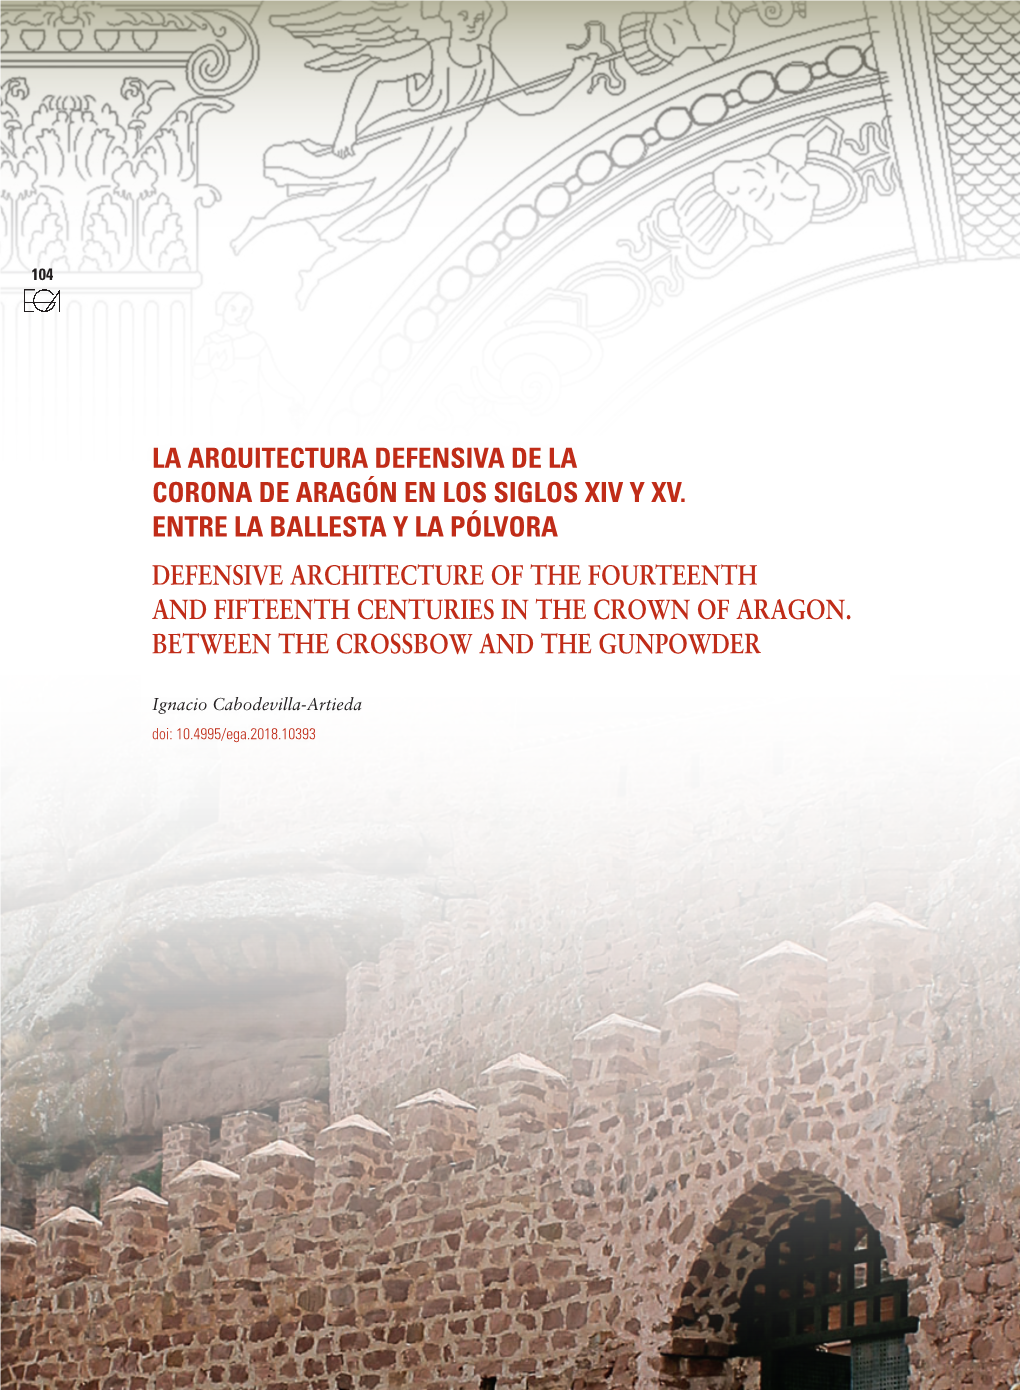 La Arquitectura Defensiva De La Corona De Aragón En Los Siglos Xiv Y Xv